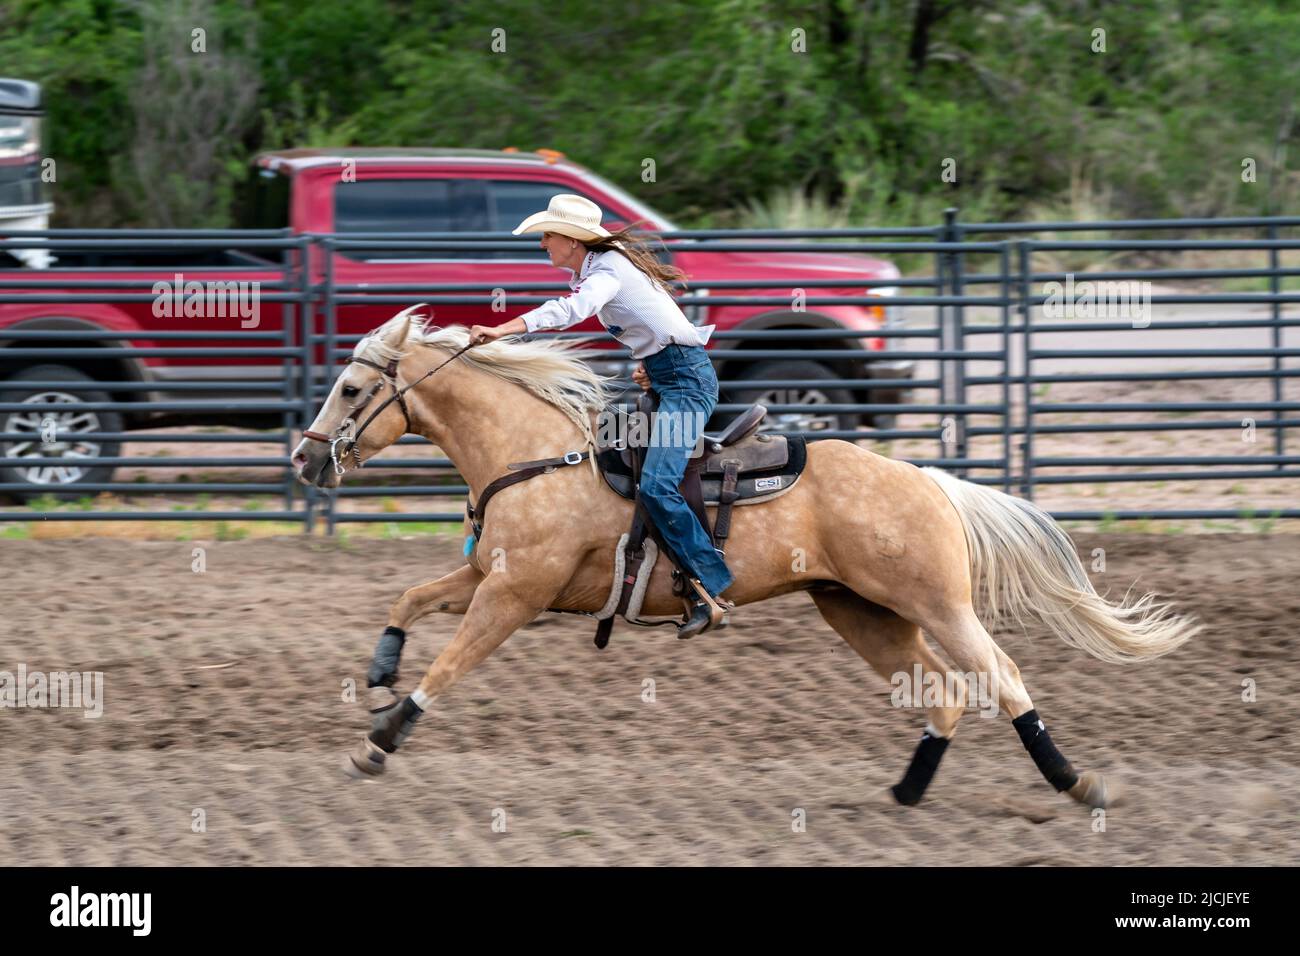 Rodeo in Colorado Springs, Colorado Stock Photo